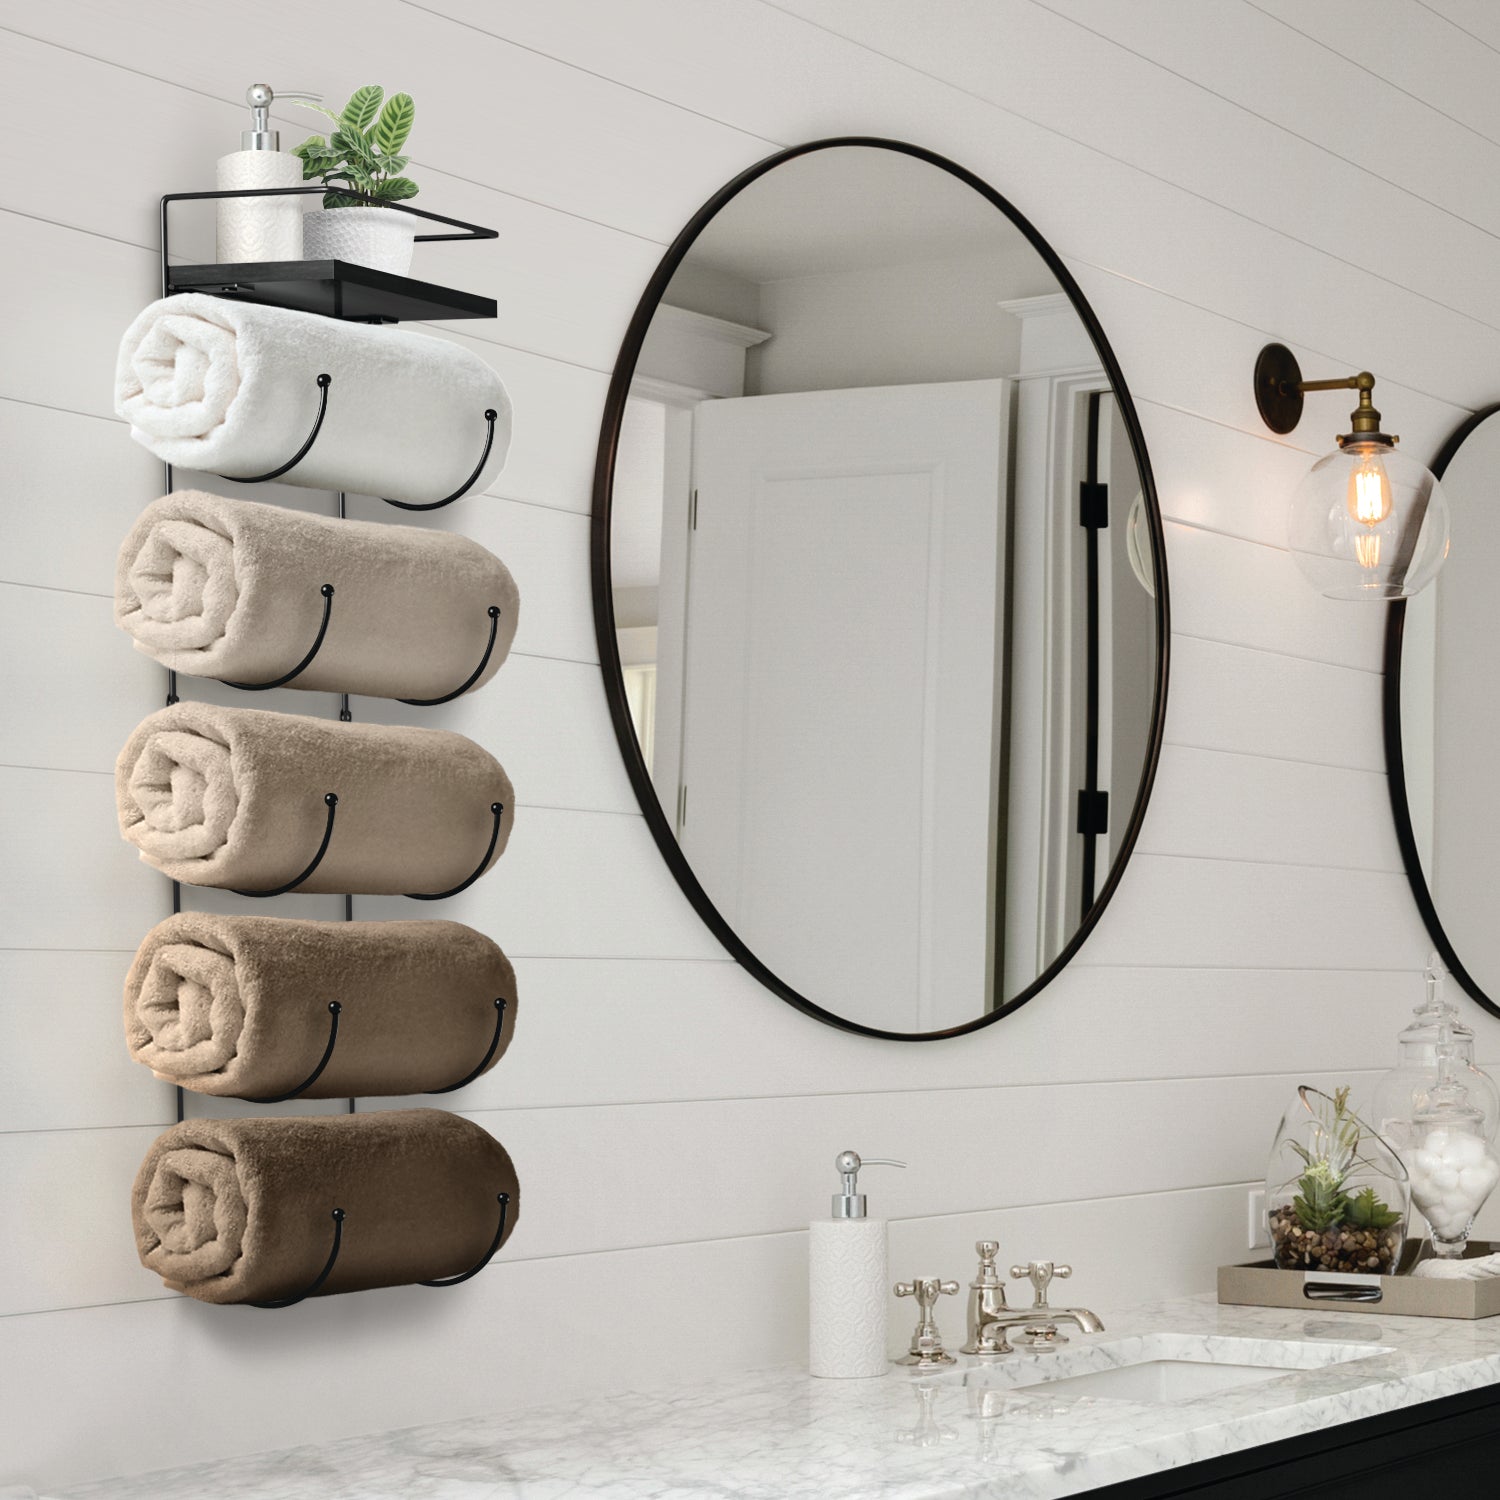 Wall Mounted Towel Rack with Shelf